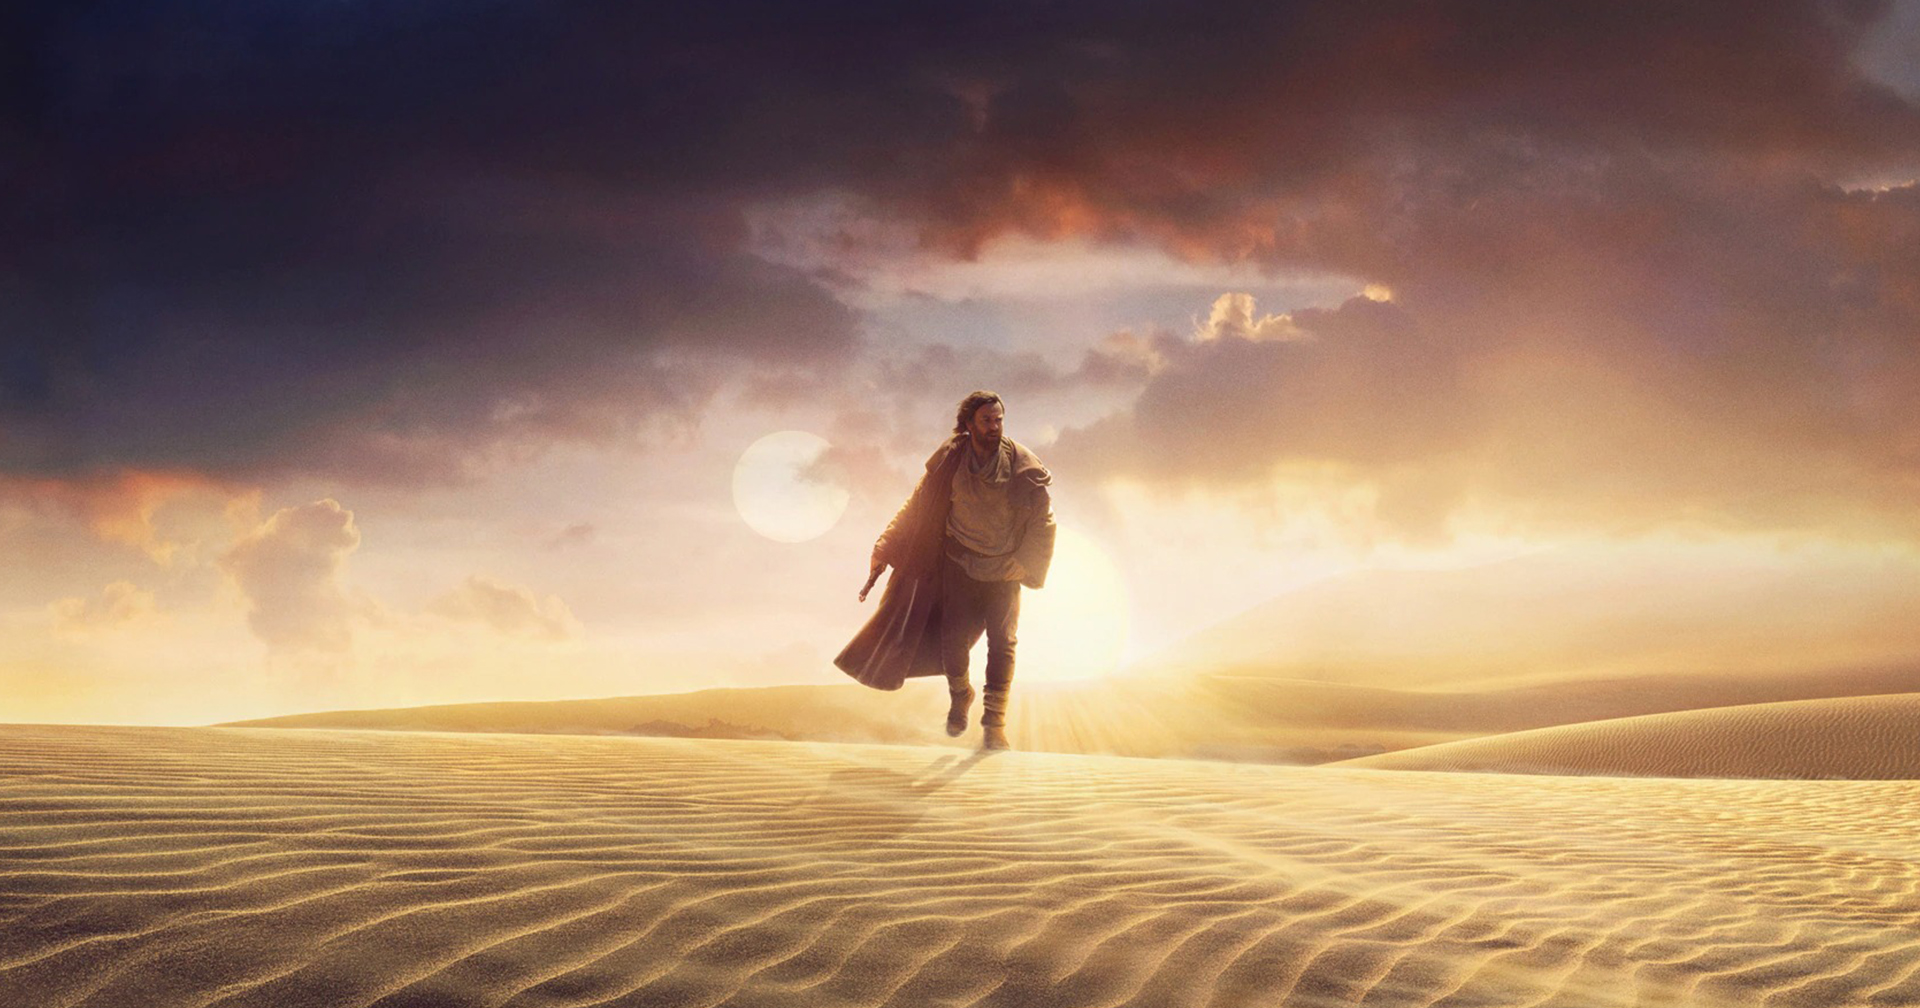 [รีวิว] Obi-Wan Kenobi (Ep. 1-3) – หวนคำนึงถึงปรมาจารย์เจได เติมเต็มเรื่องราวจากไตรภาคต้น (แบบเนือย ๆ )